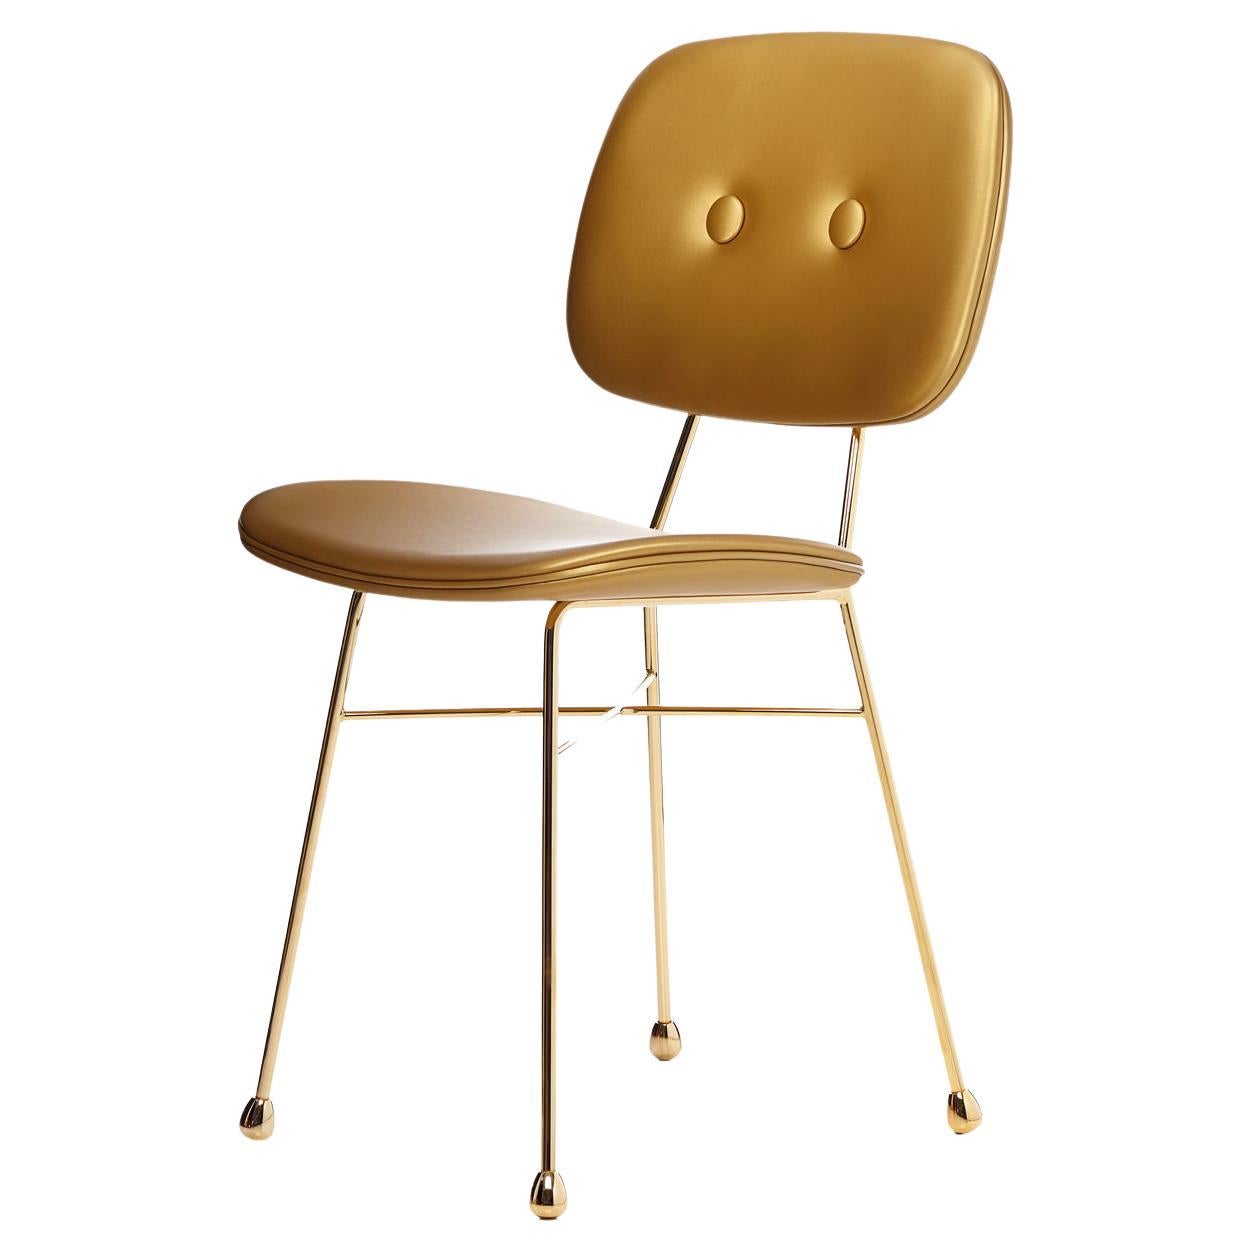 Moooi The Golden Chair mit mattem, goldenem Stahlgestell und Polsterung